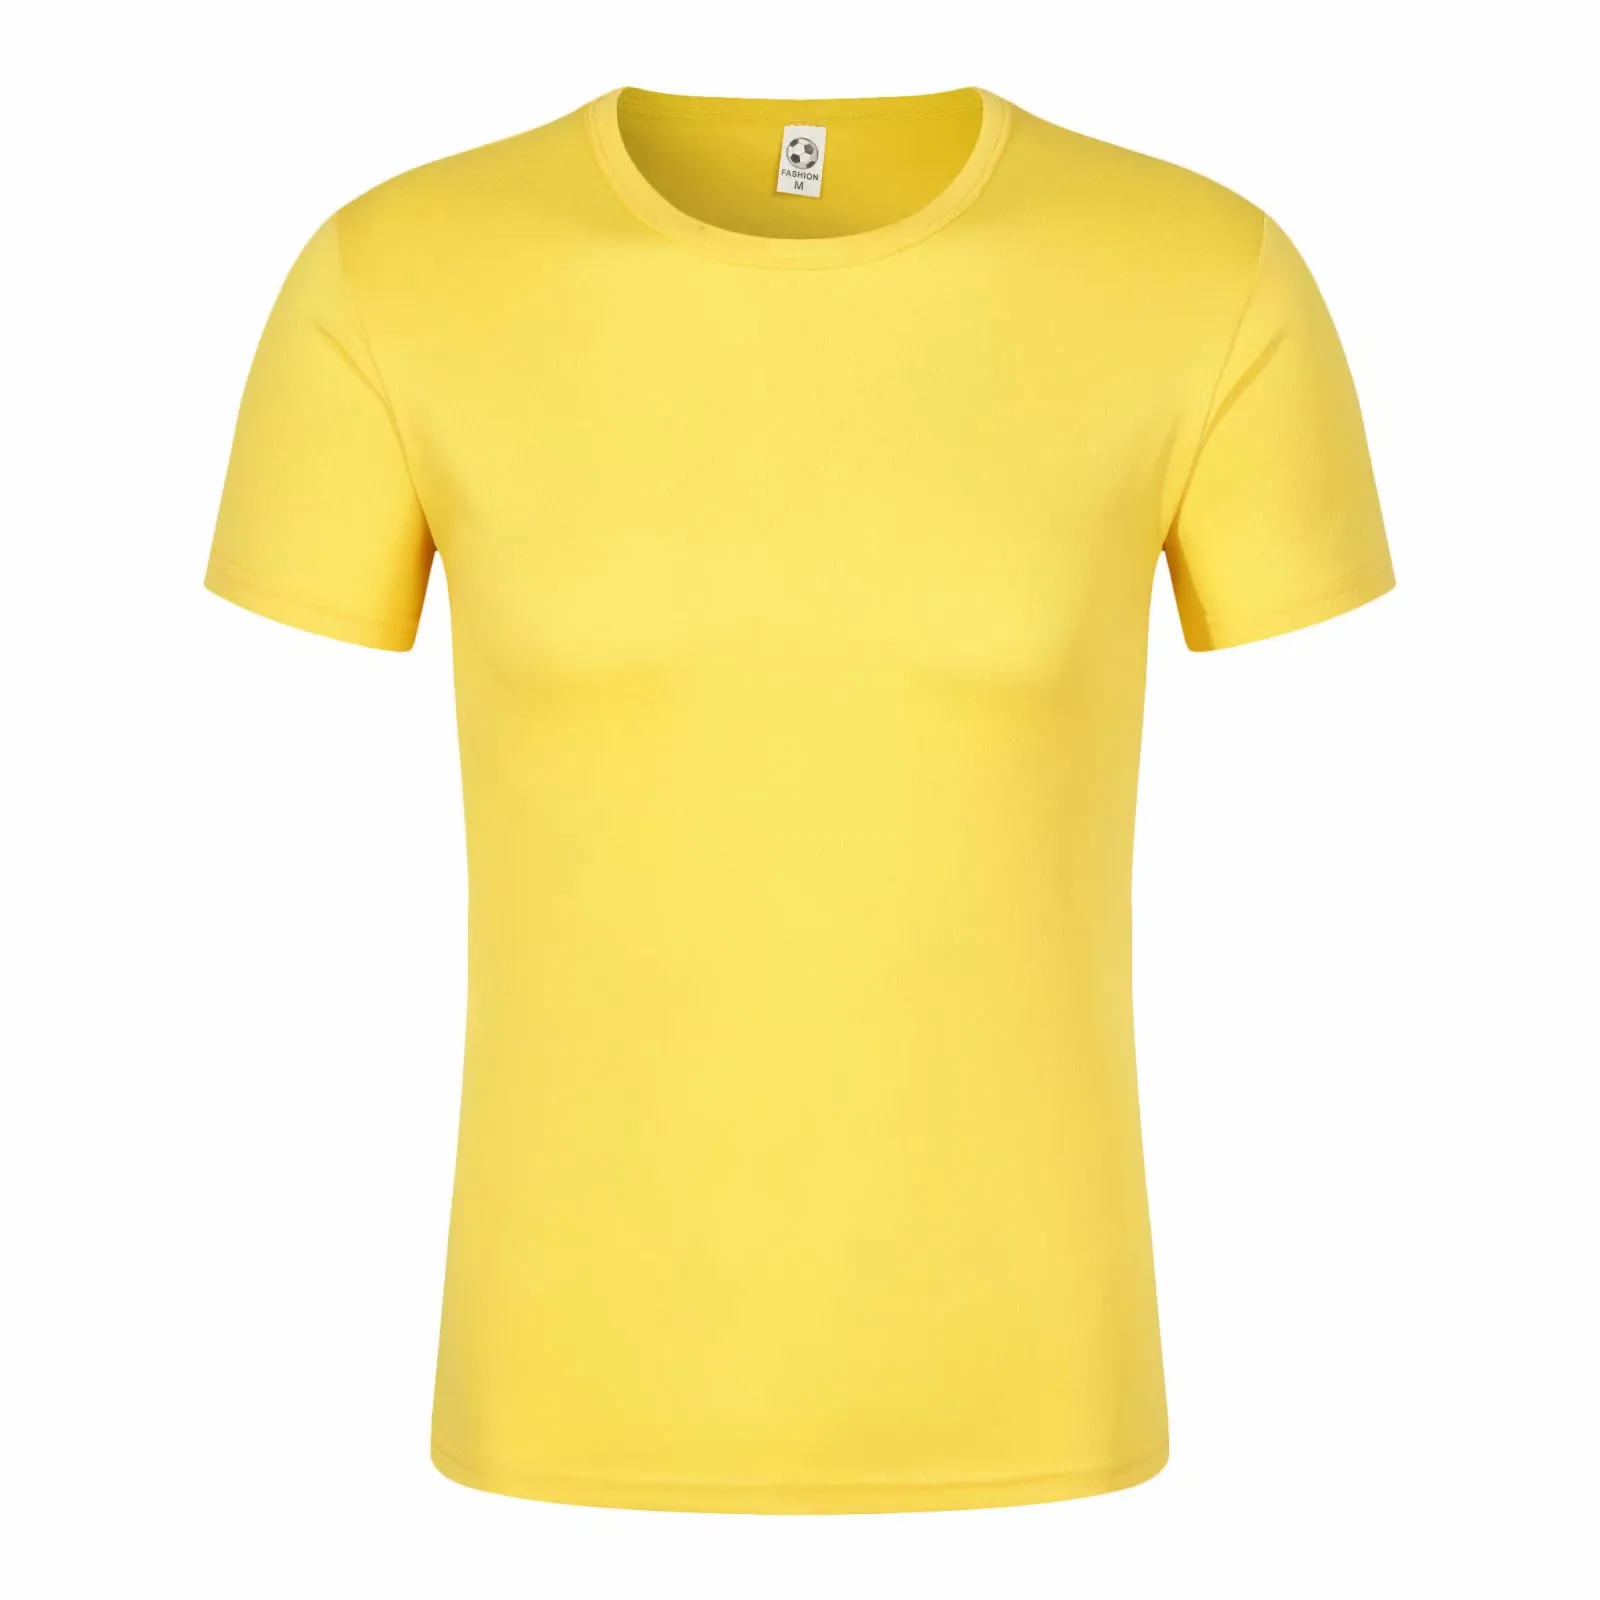 Paquete de 5 camisetas de manga corta, con cuello redondo y de secado  rápido para hombre, camisetas deportivas para correr, entrenar o ir al  gimnasio